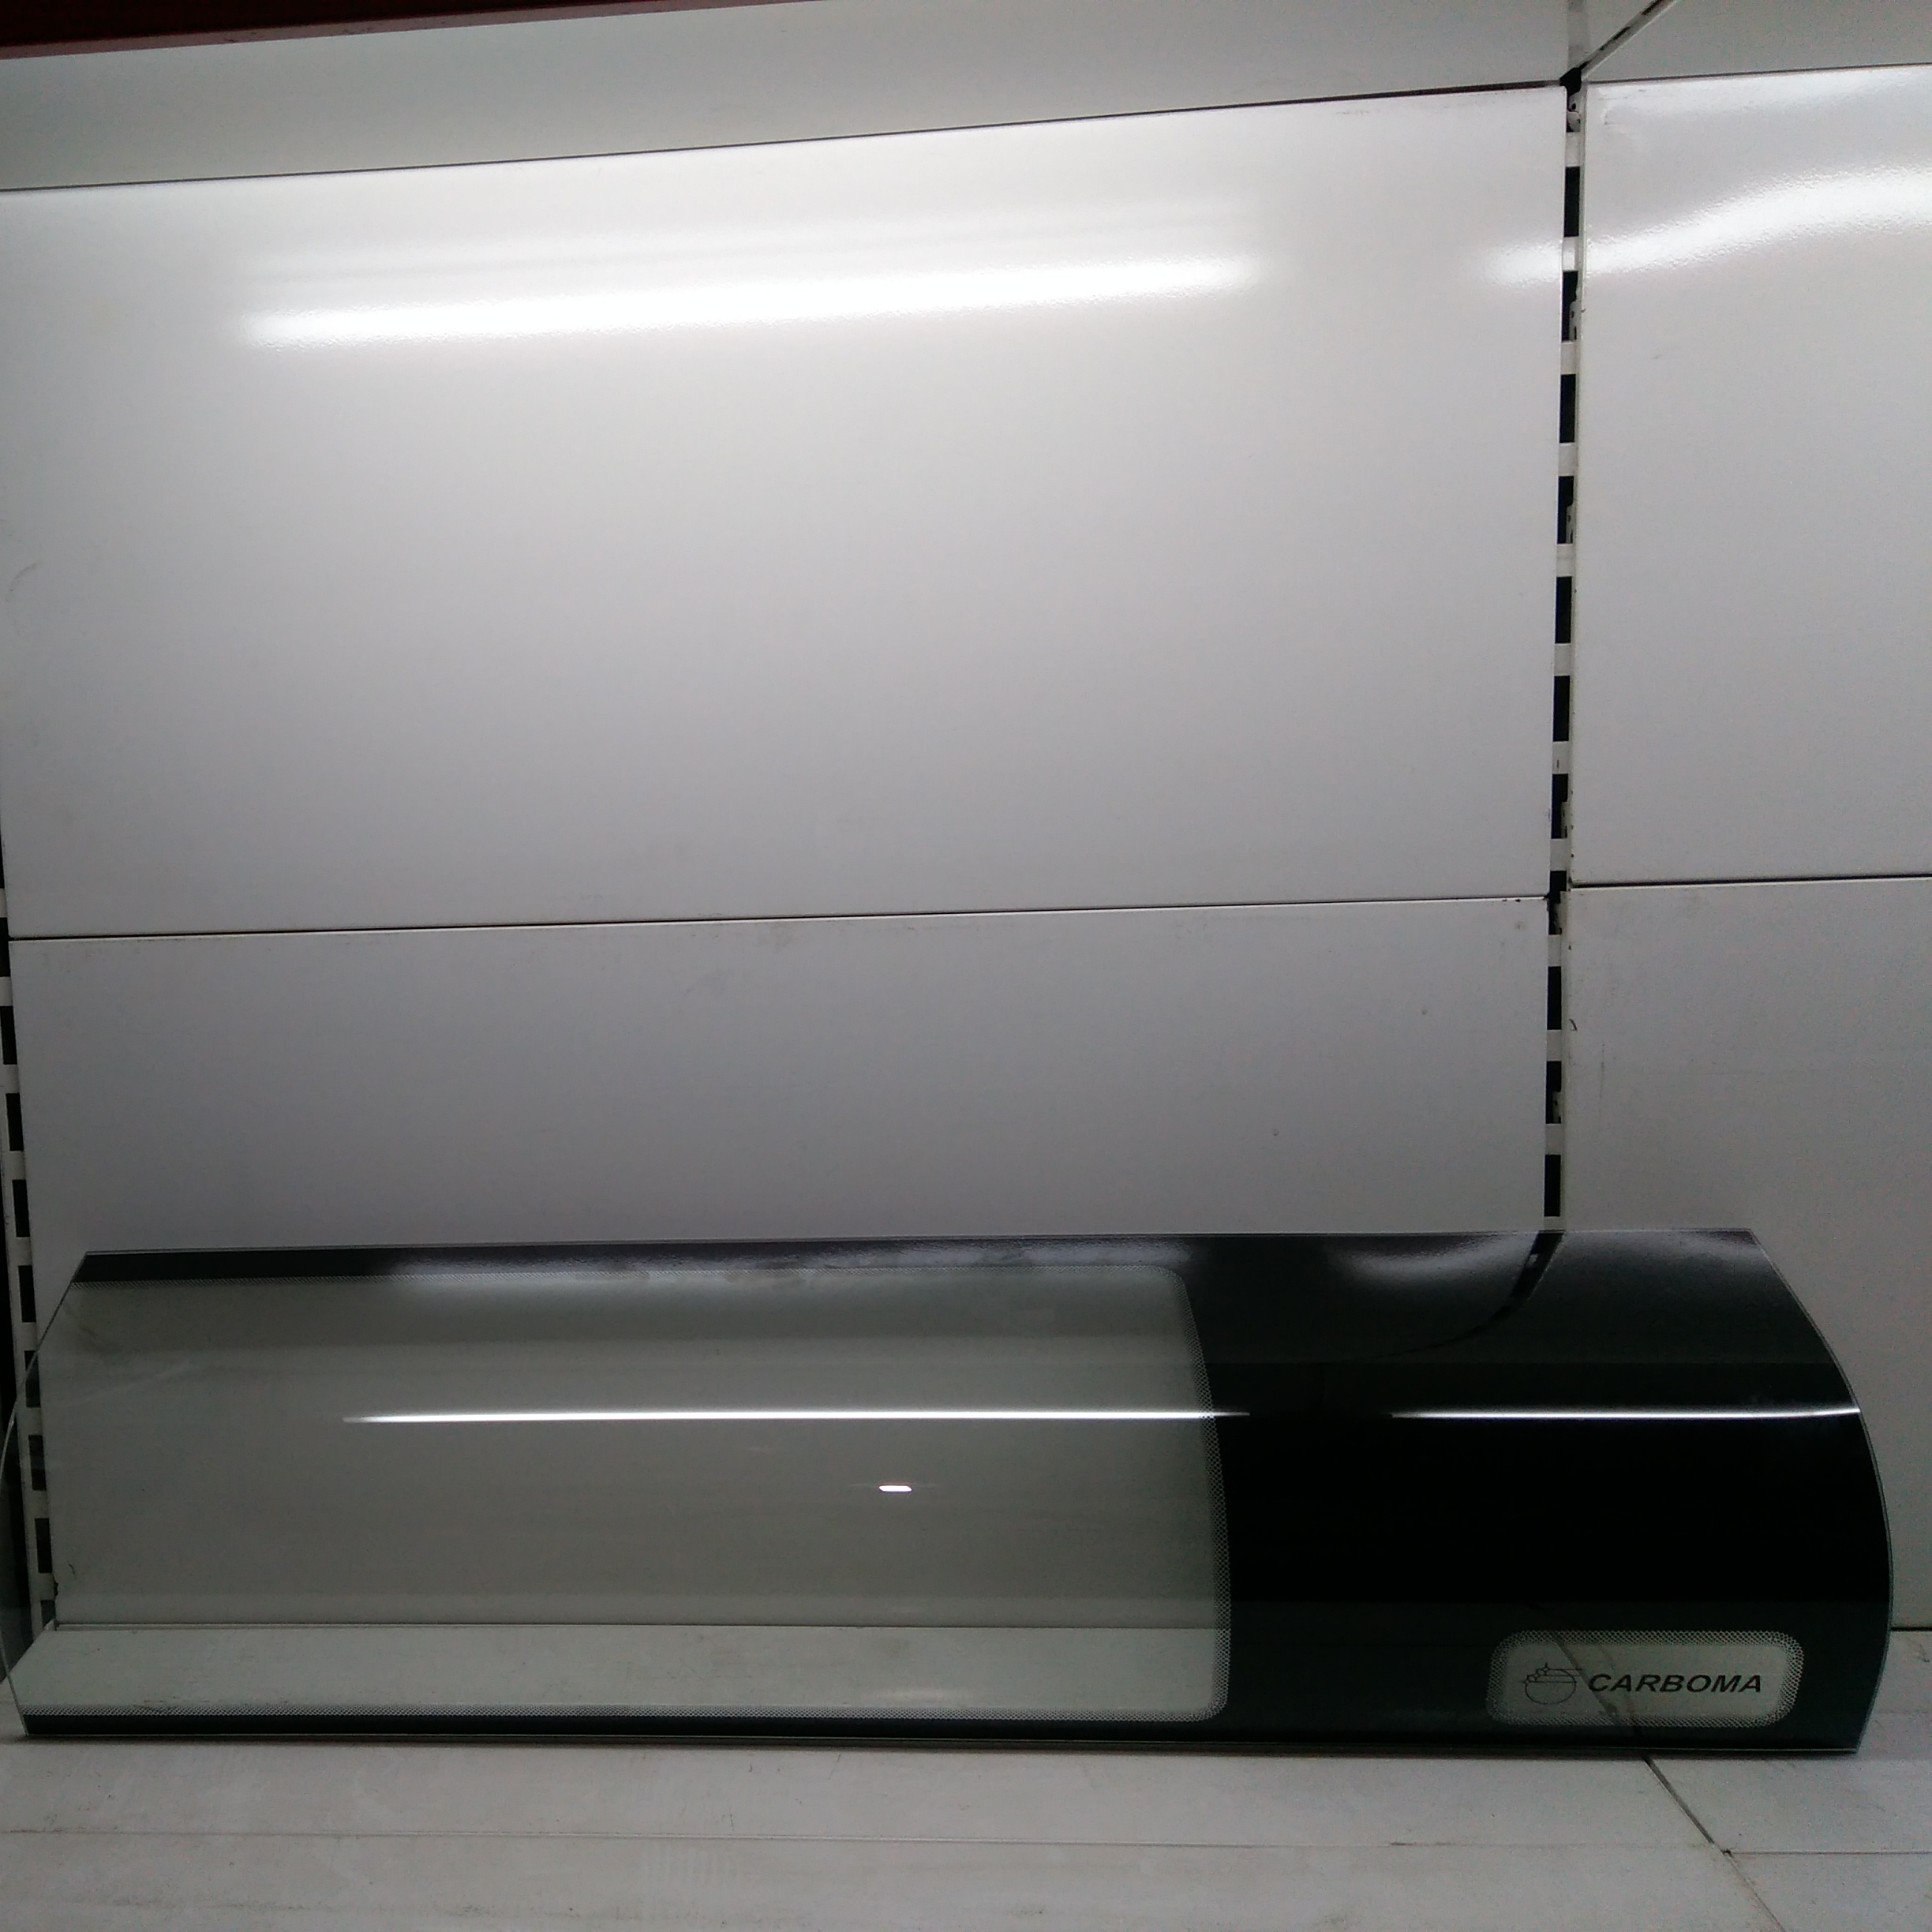 Стекло гнутое фронтальное для холодильной витрины carboma ВХСв XL-1.5 м. цена 9200 руб.